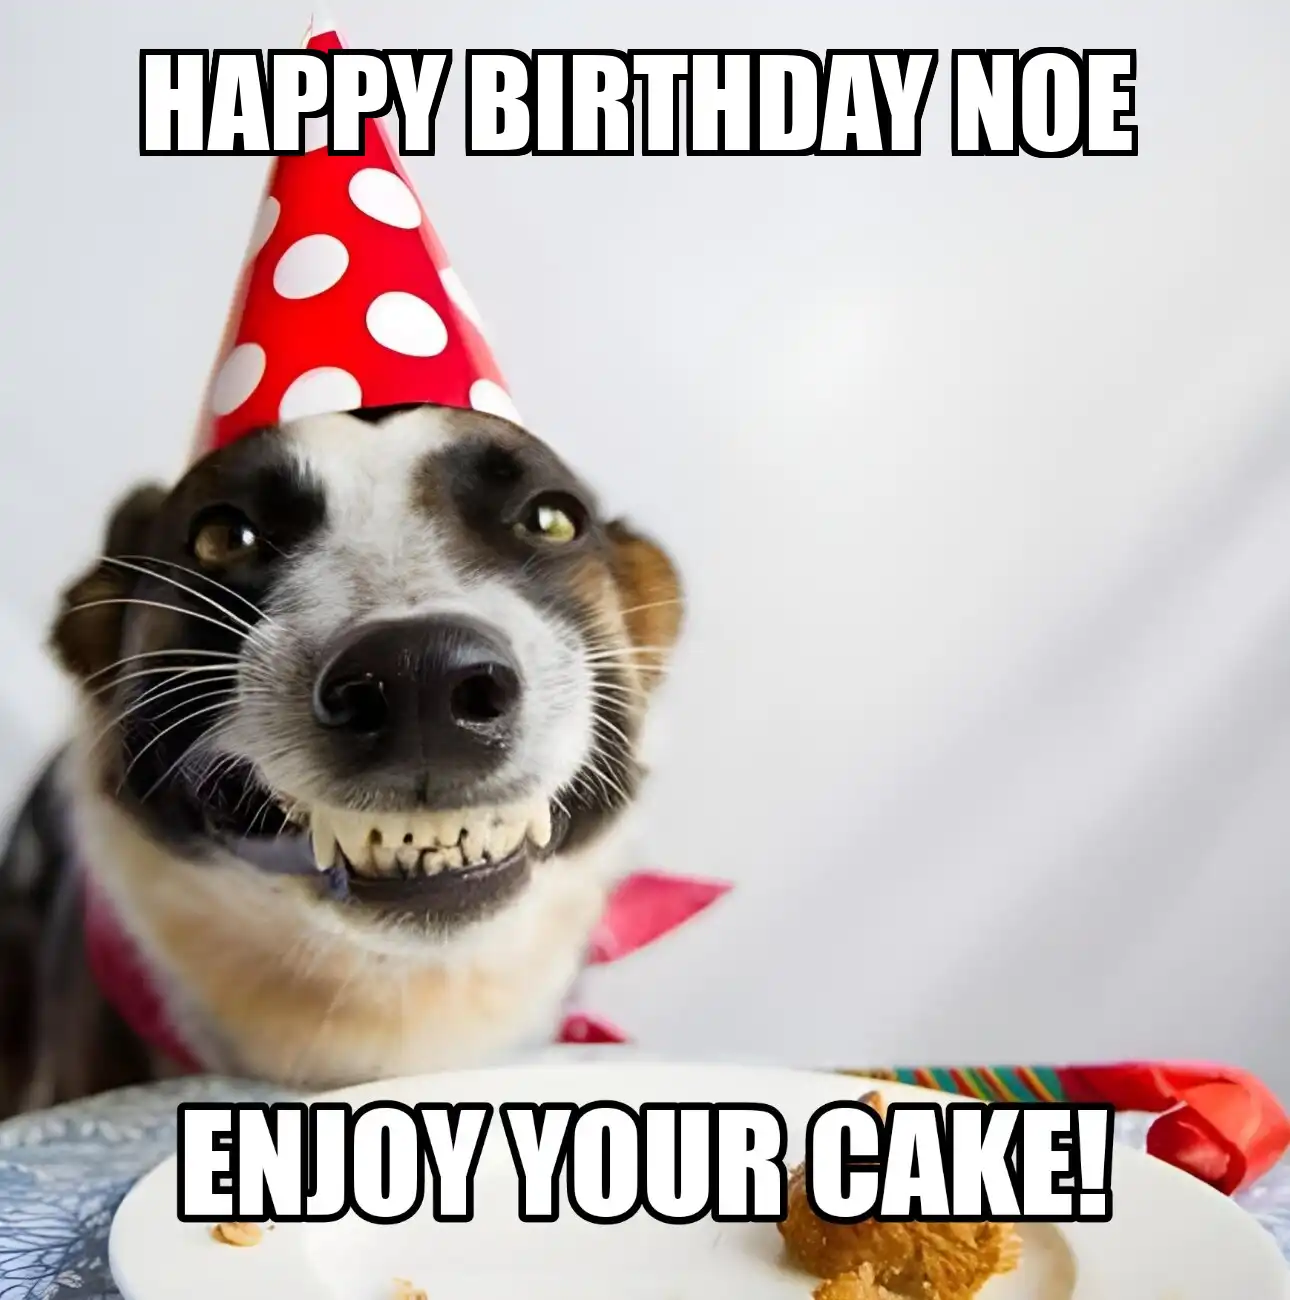 Happy Birthday Noe Enjoy Your Cake Dog Meme